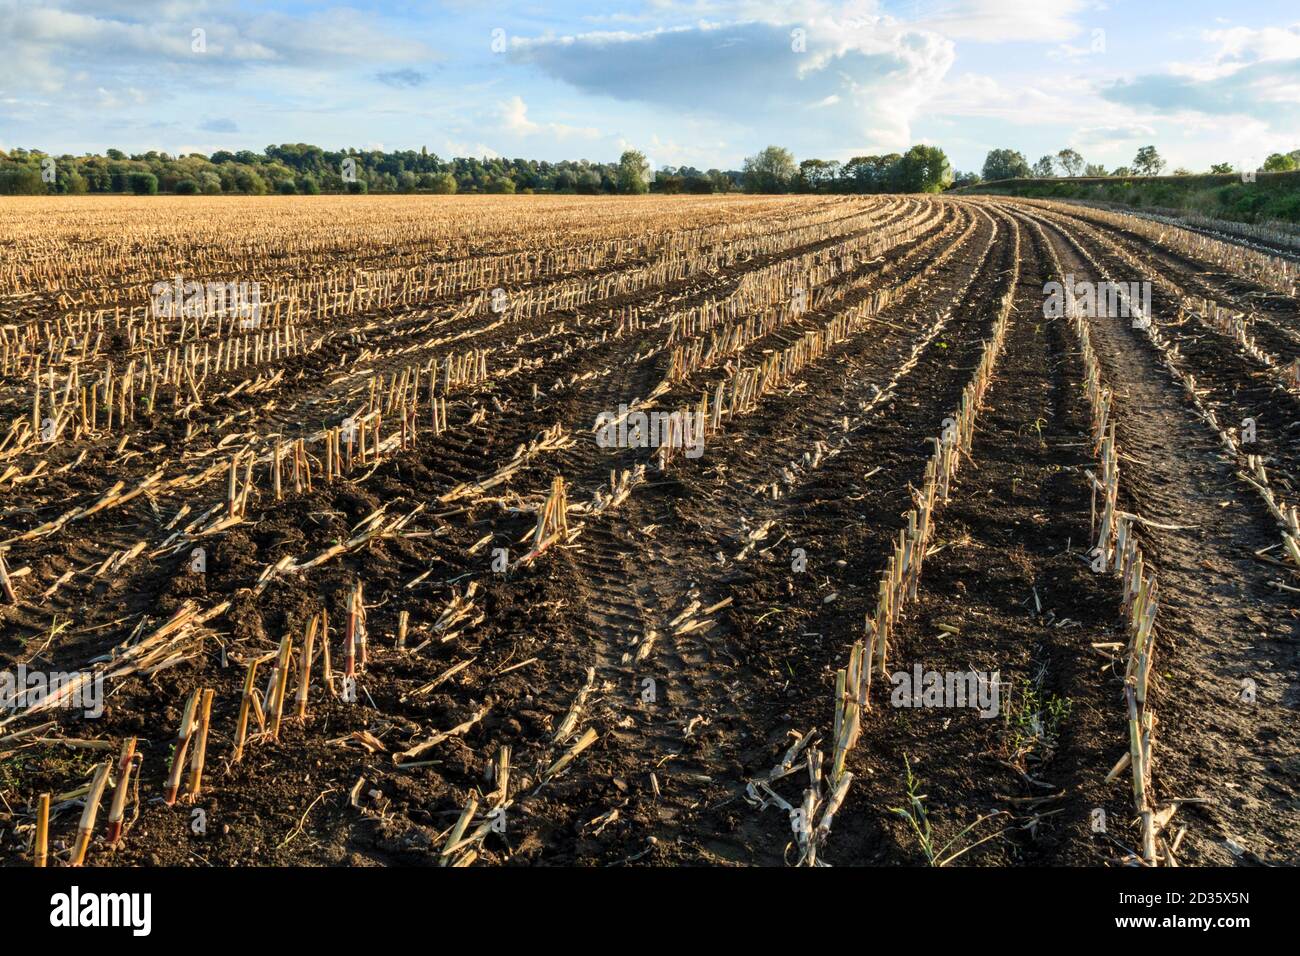 Líneas de rastrojos en un campo de maíz cosechado recientemente, Stoke Bardolph, Nottinghamshire, Inglaterra, Reino Unido. Foto de stock